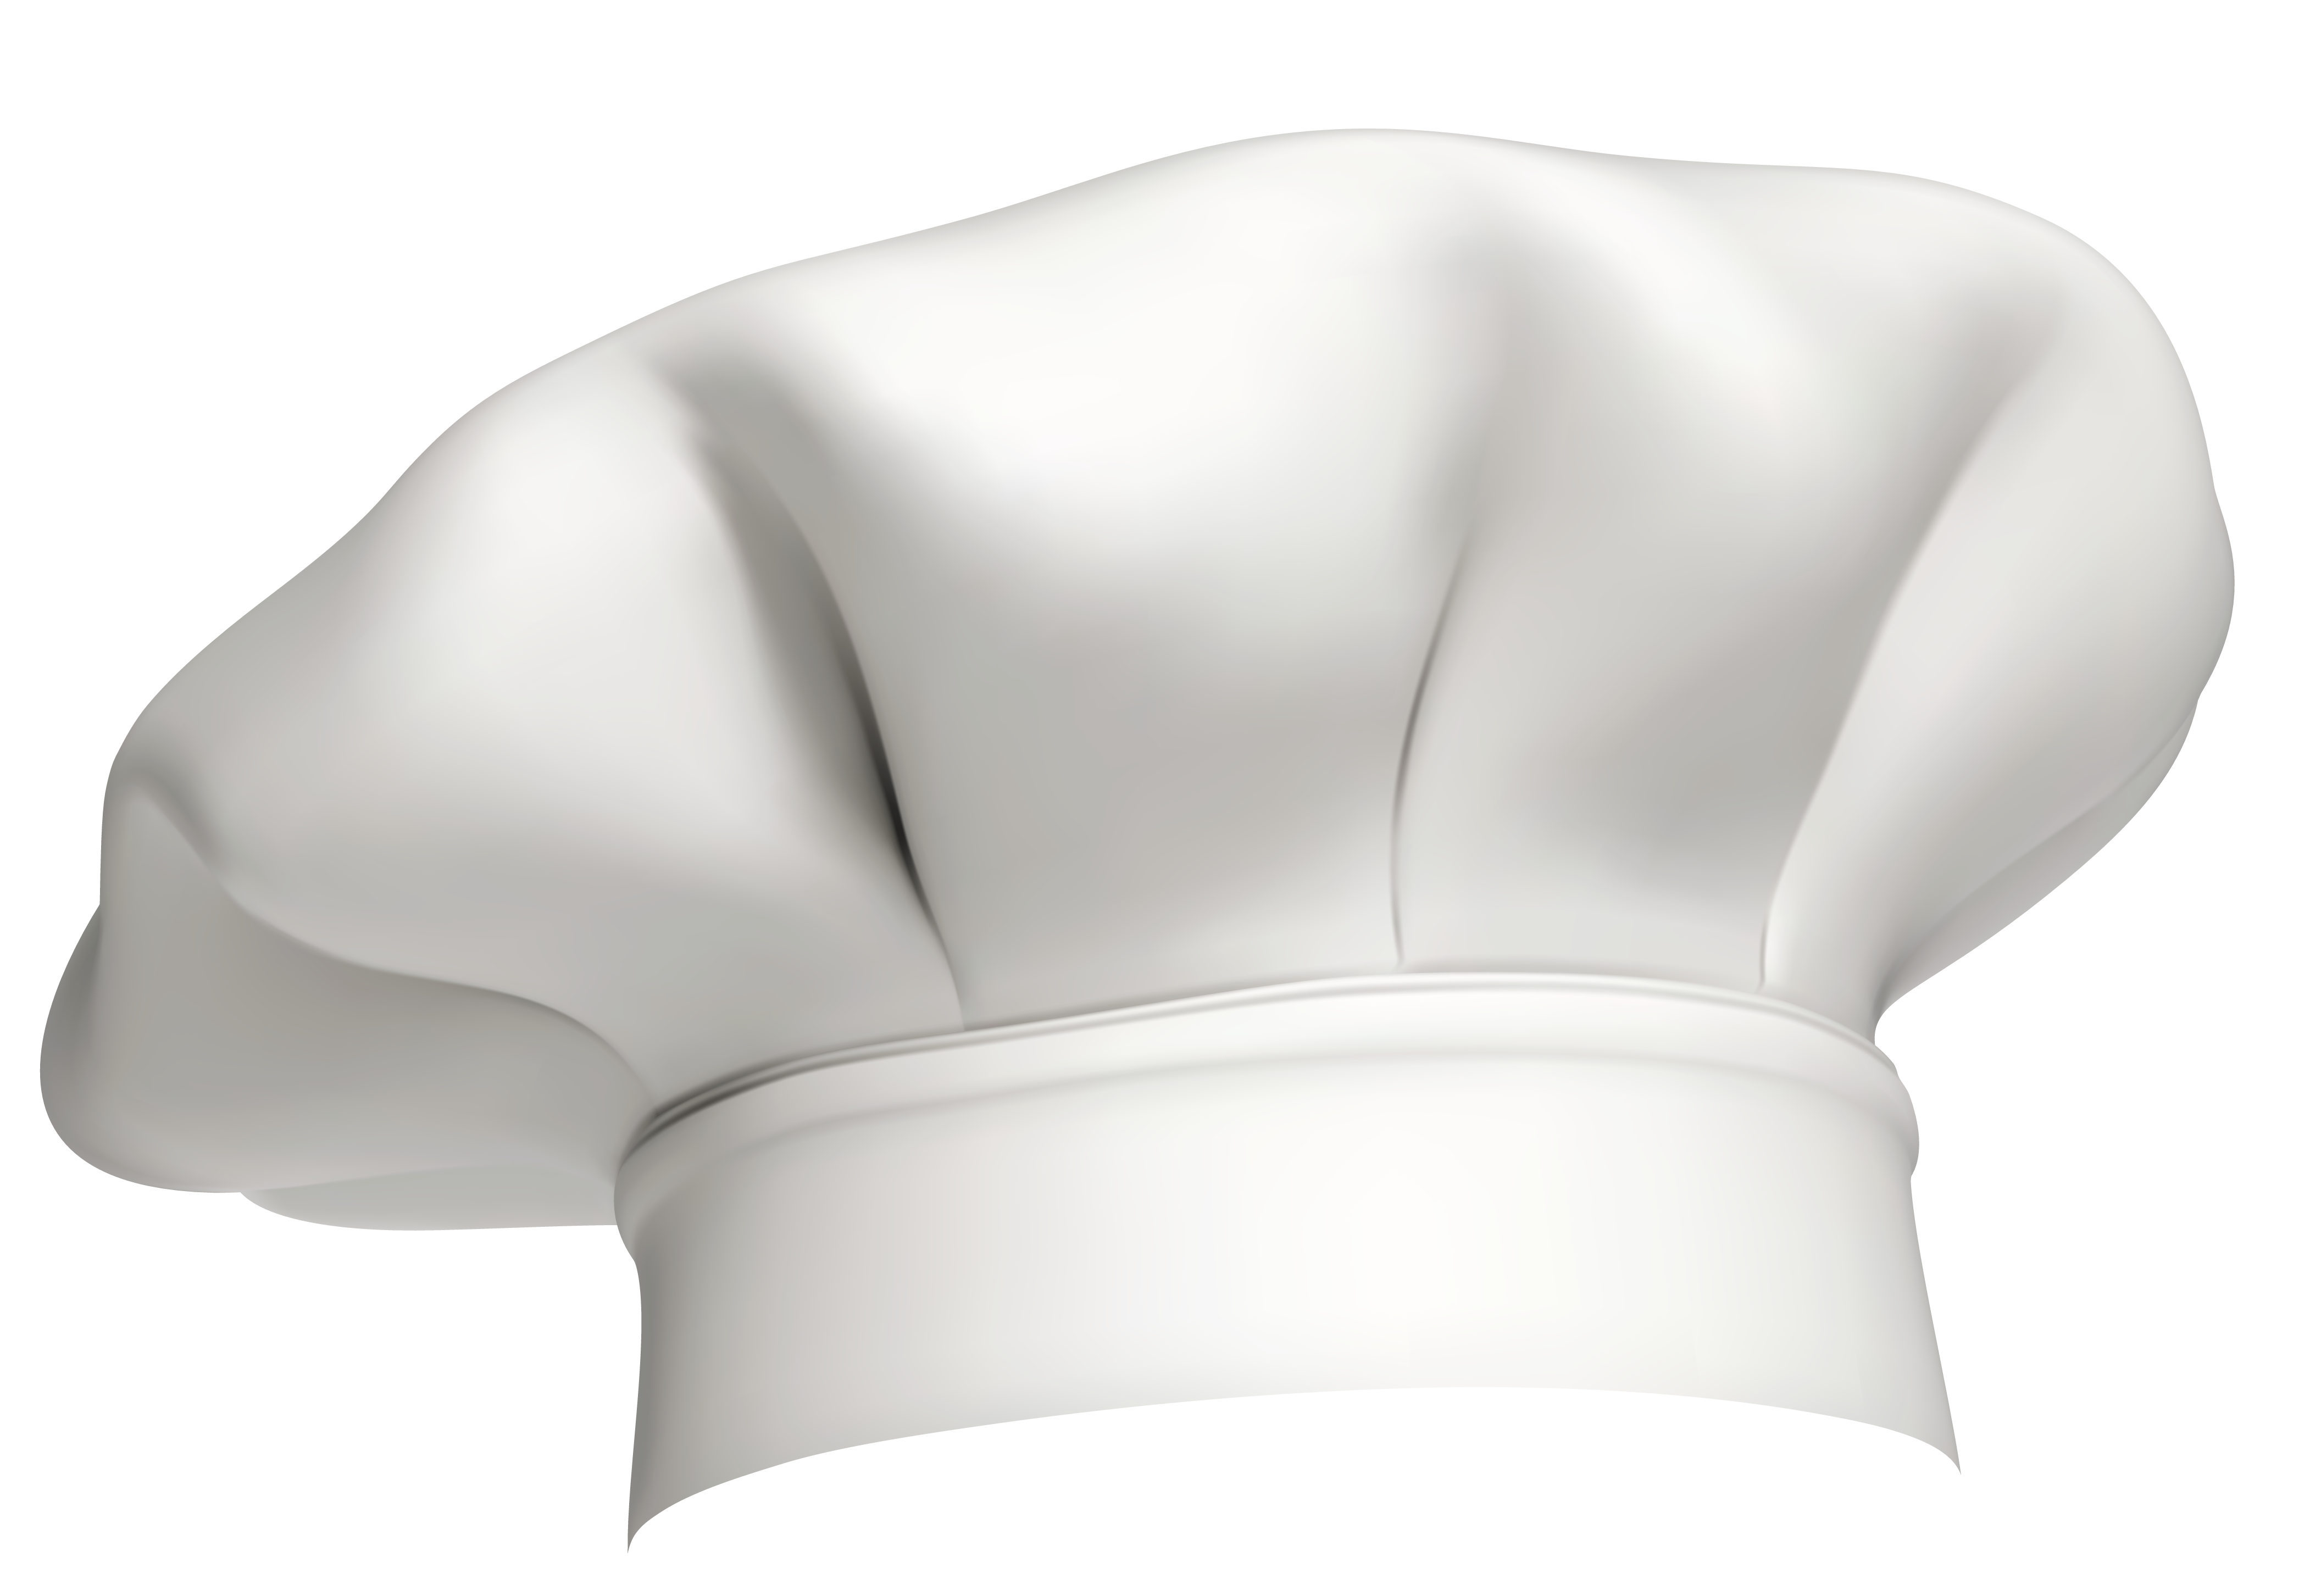 Imagen Transparente del sombrero del chef